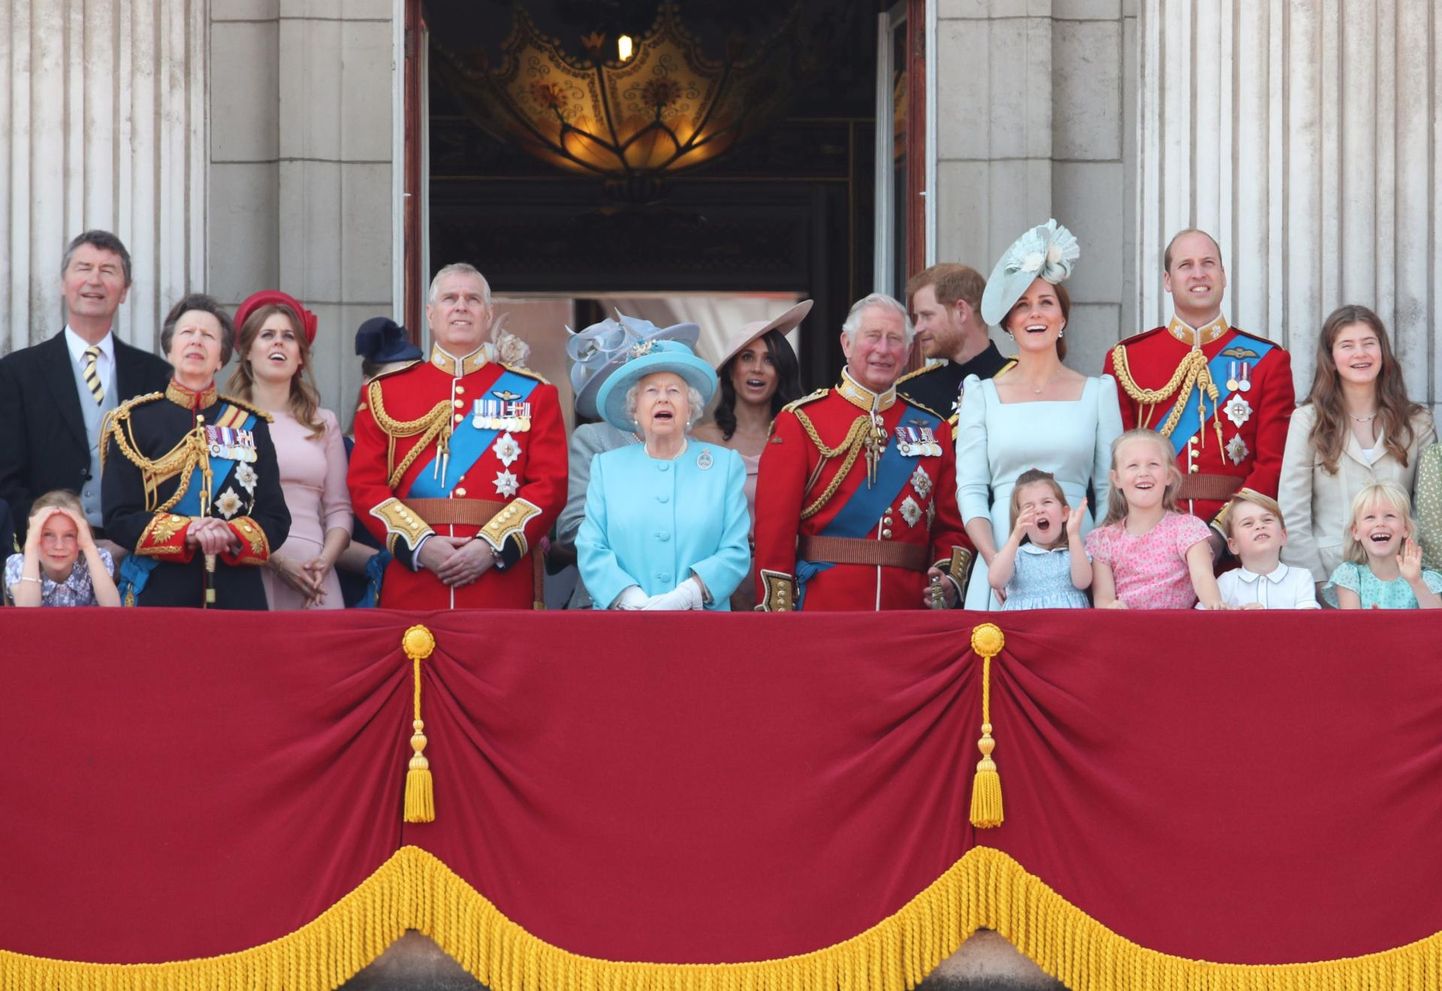 Paraadi jälgimine Buckinghami palee rõdult 2018. aastal, siis, kui pere oli veel koos. Peagi raputasid kuningakorda prints Harry ja hertsoginna Meghani ümber lahvatanud skandaalid, sel aastal kaotas kuninganna oma kaasa prints Philipi.